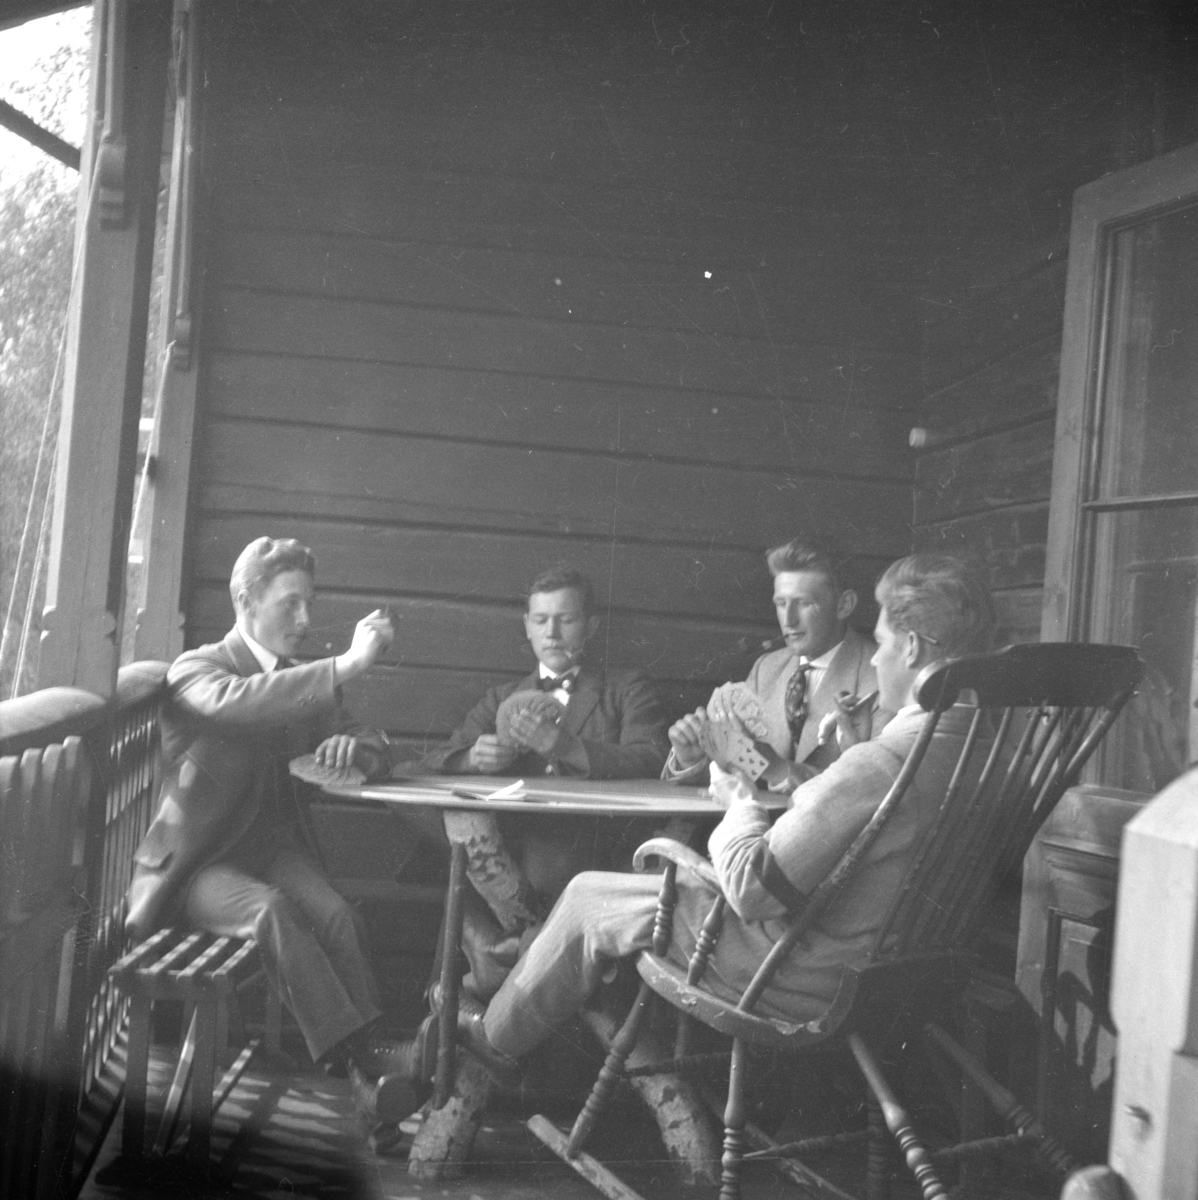 Fire menn på veranda som spiller kort.